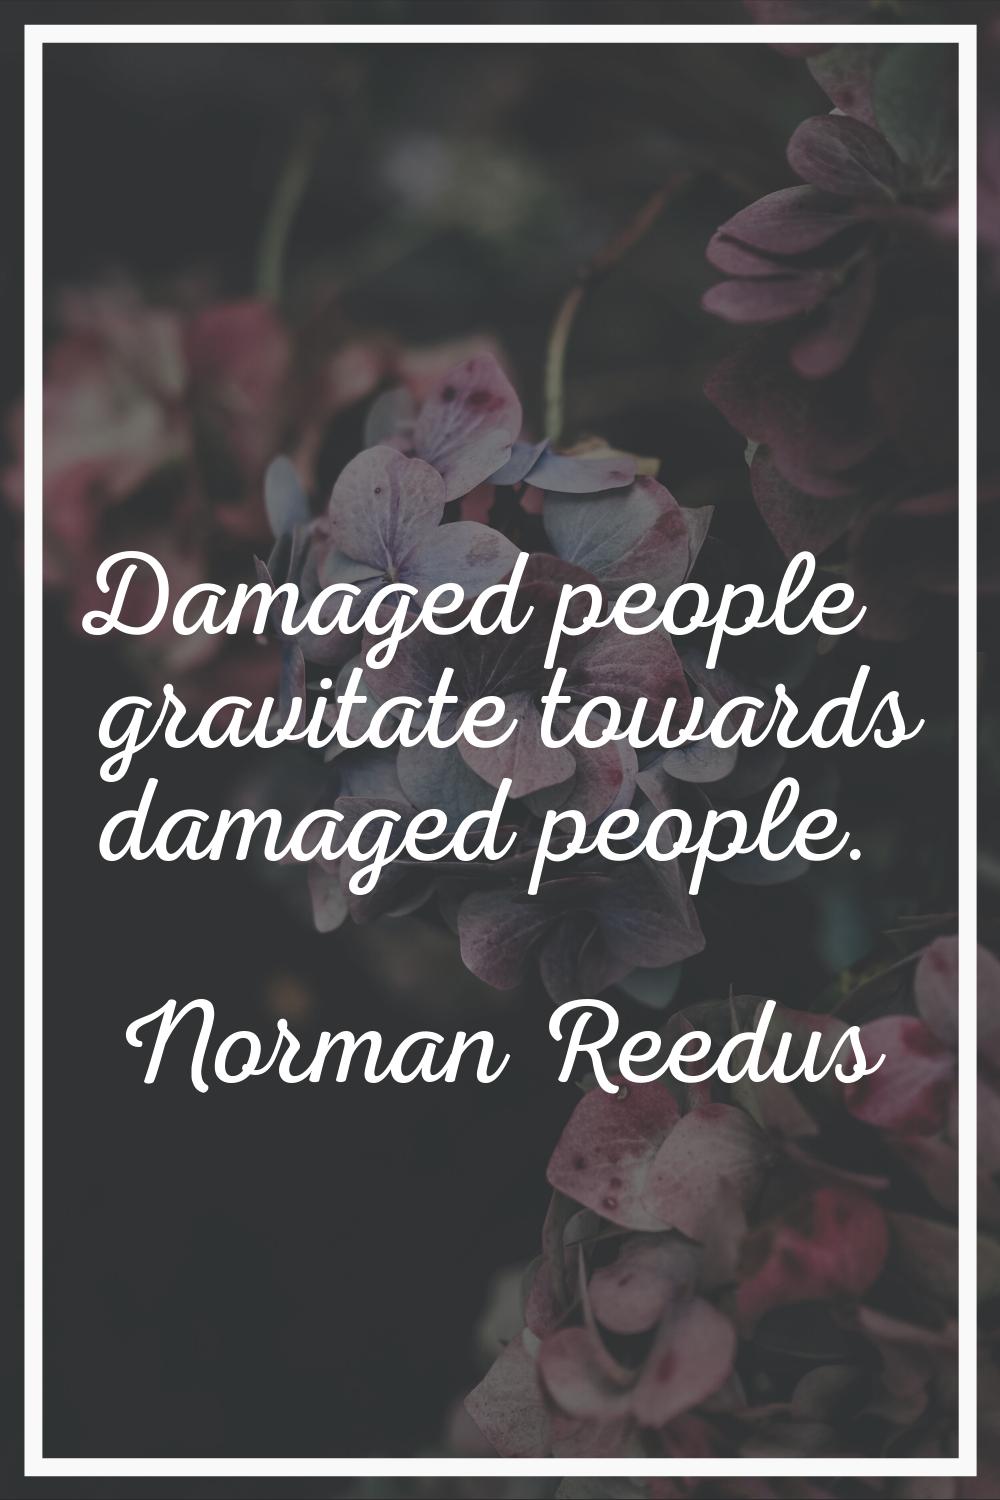 Damaged people gravitate towards damaged people.